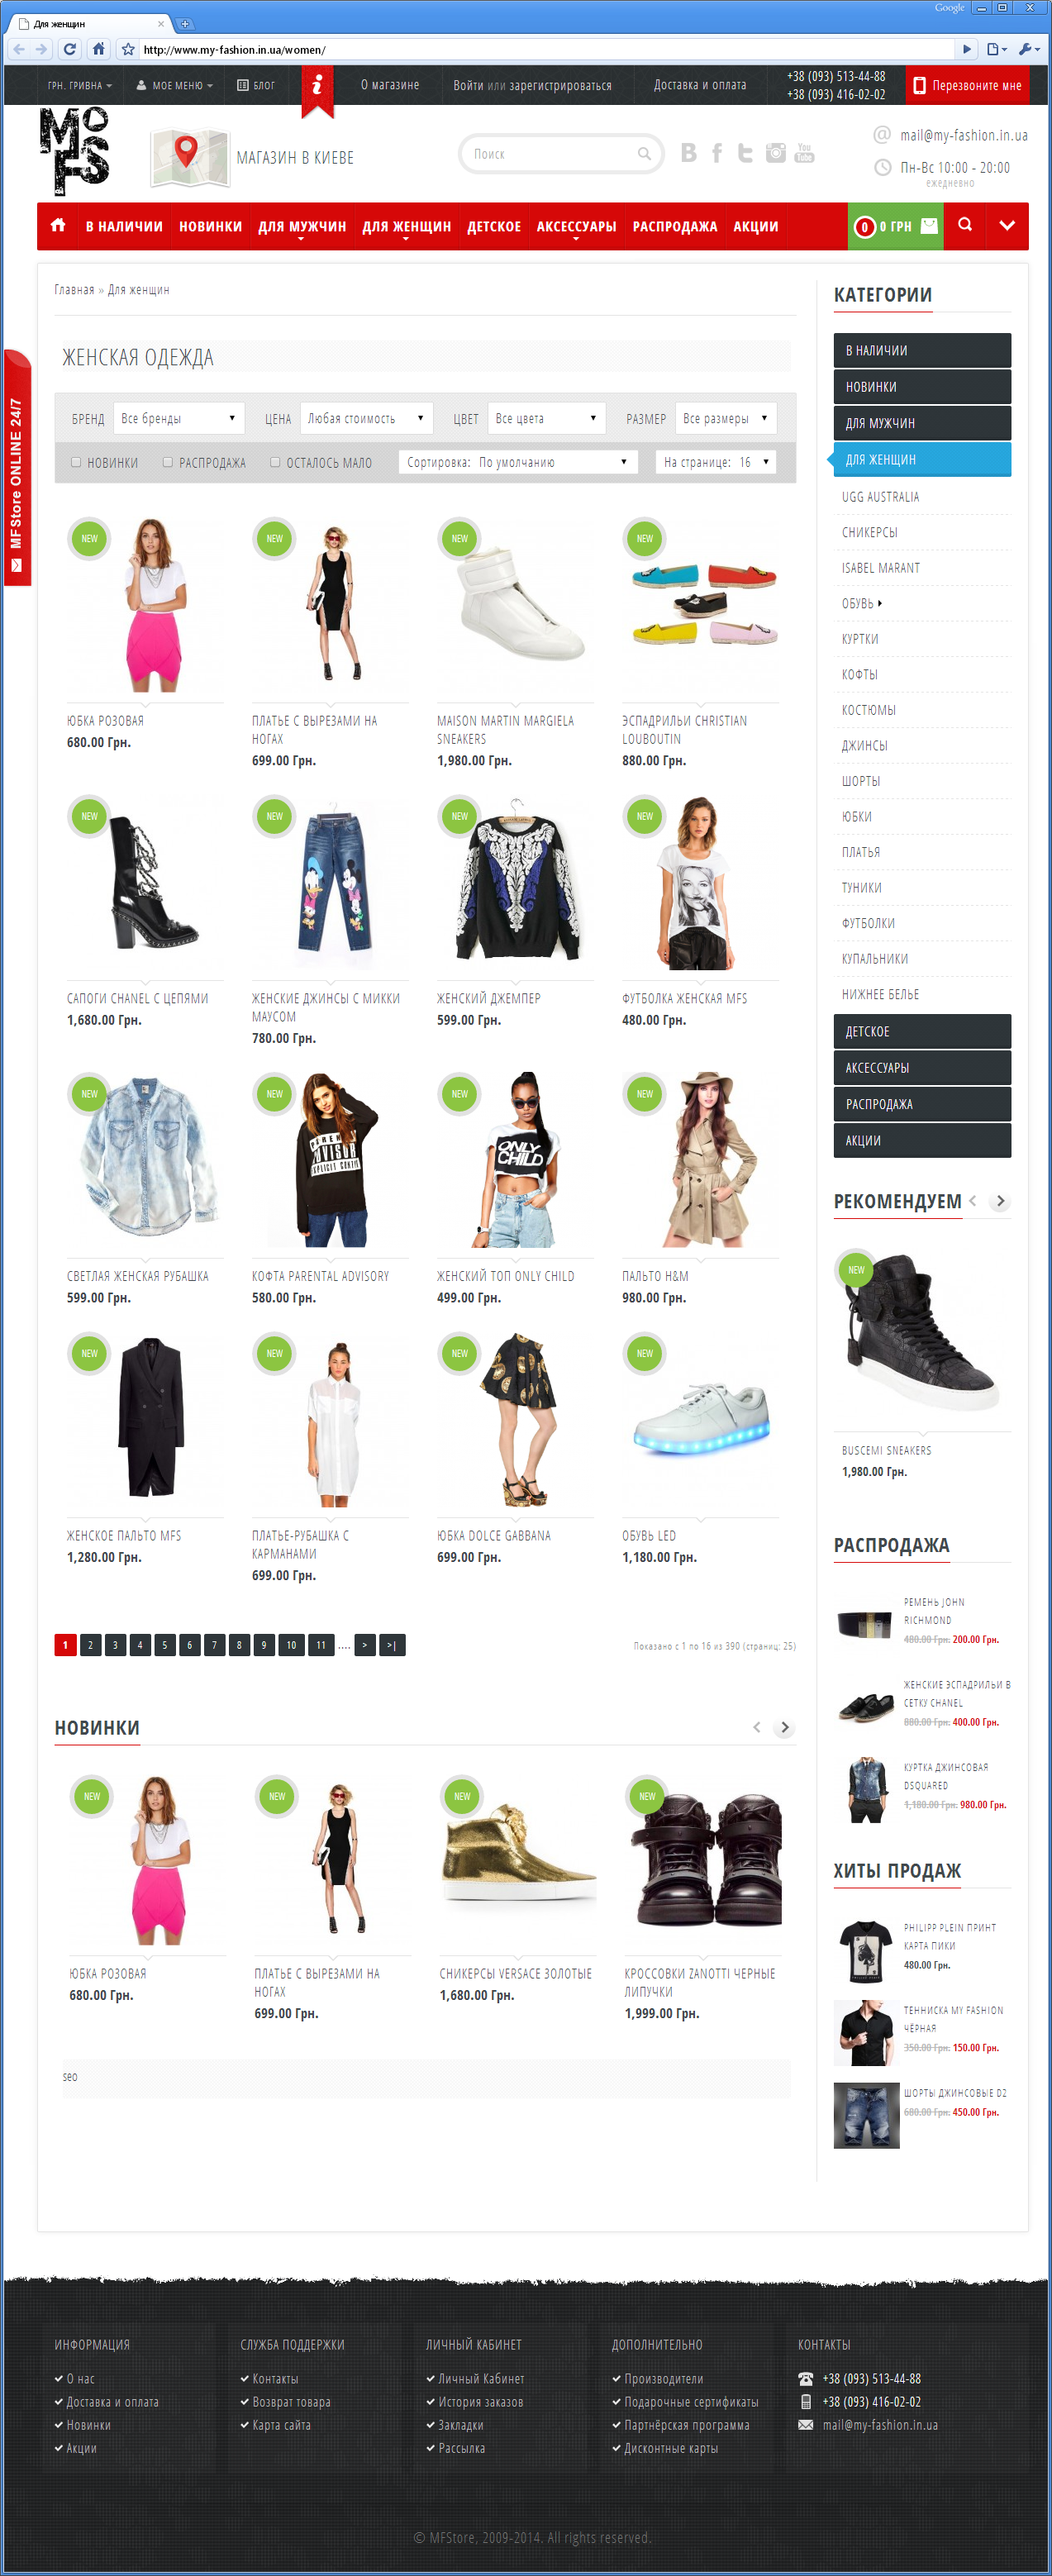 Редизайн интернет-магазина элитной молодежной одежды | проекты Evergreen 12